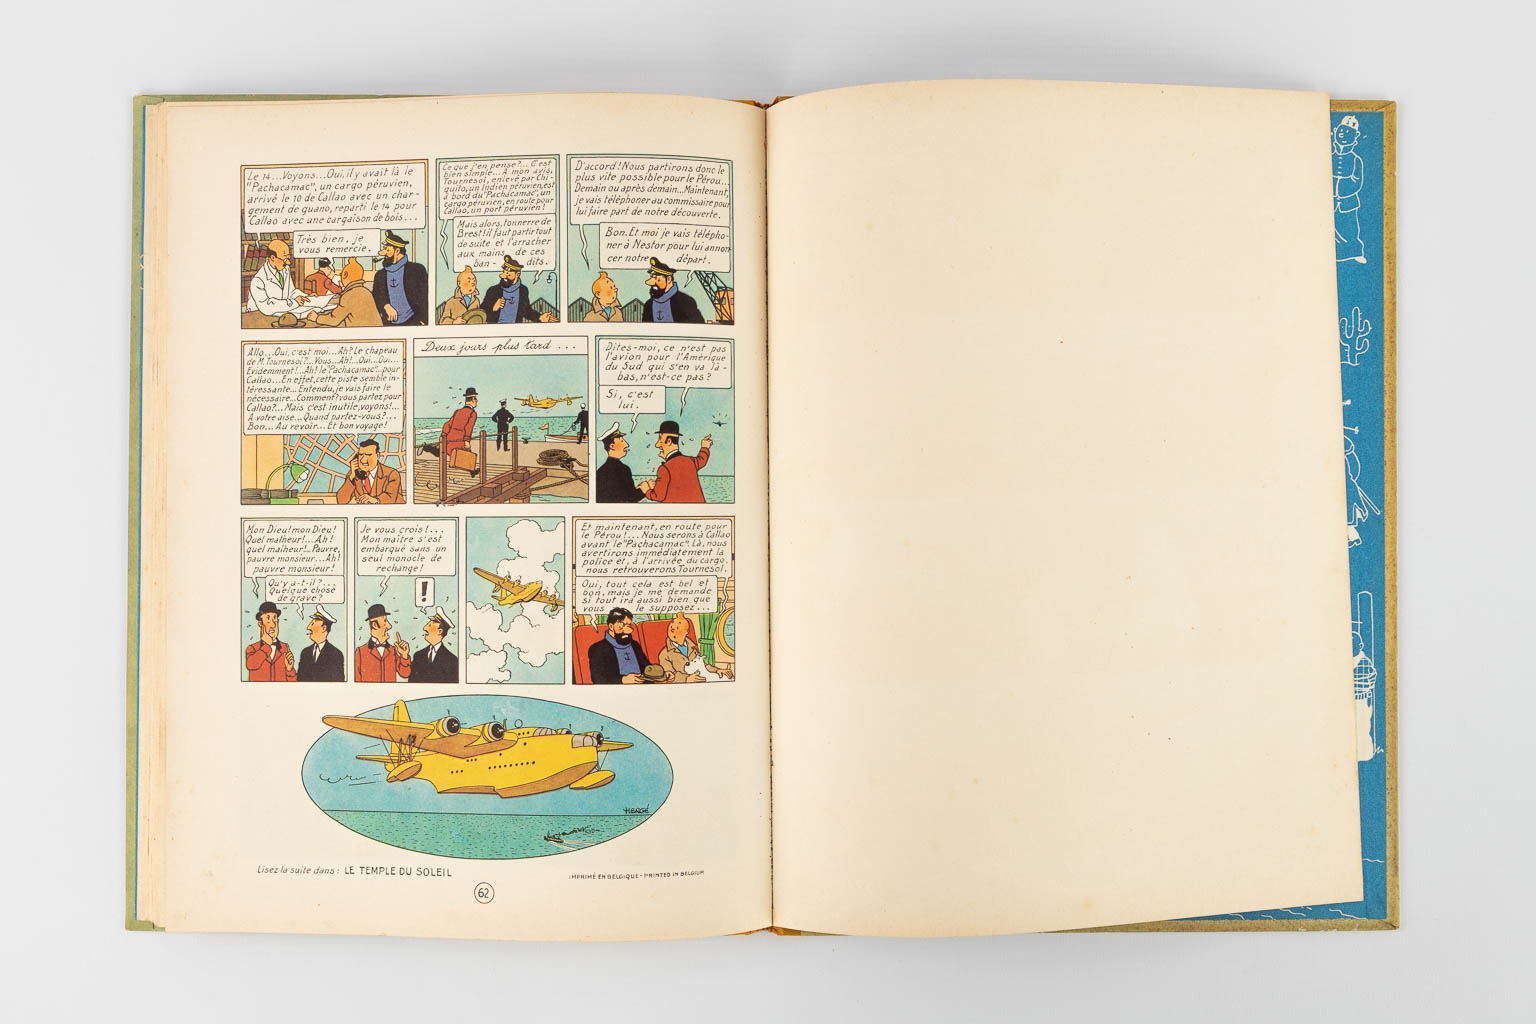 Hergé, Les Avontures De Tintin, Les 7 Boules De Cristal, een strip. 1948. (W:23,5 x H:30,5 cm)